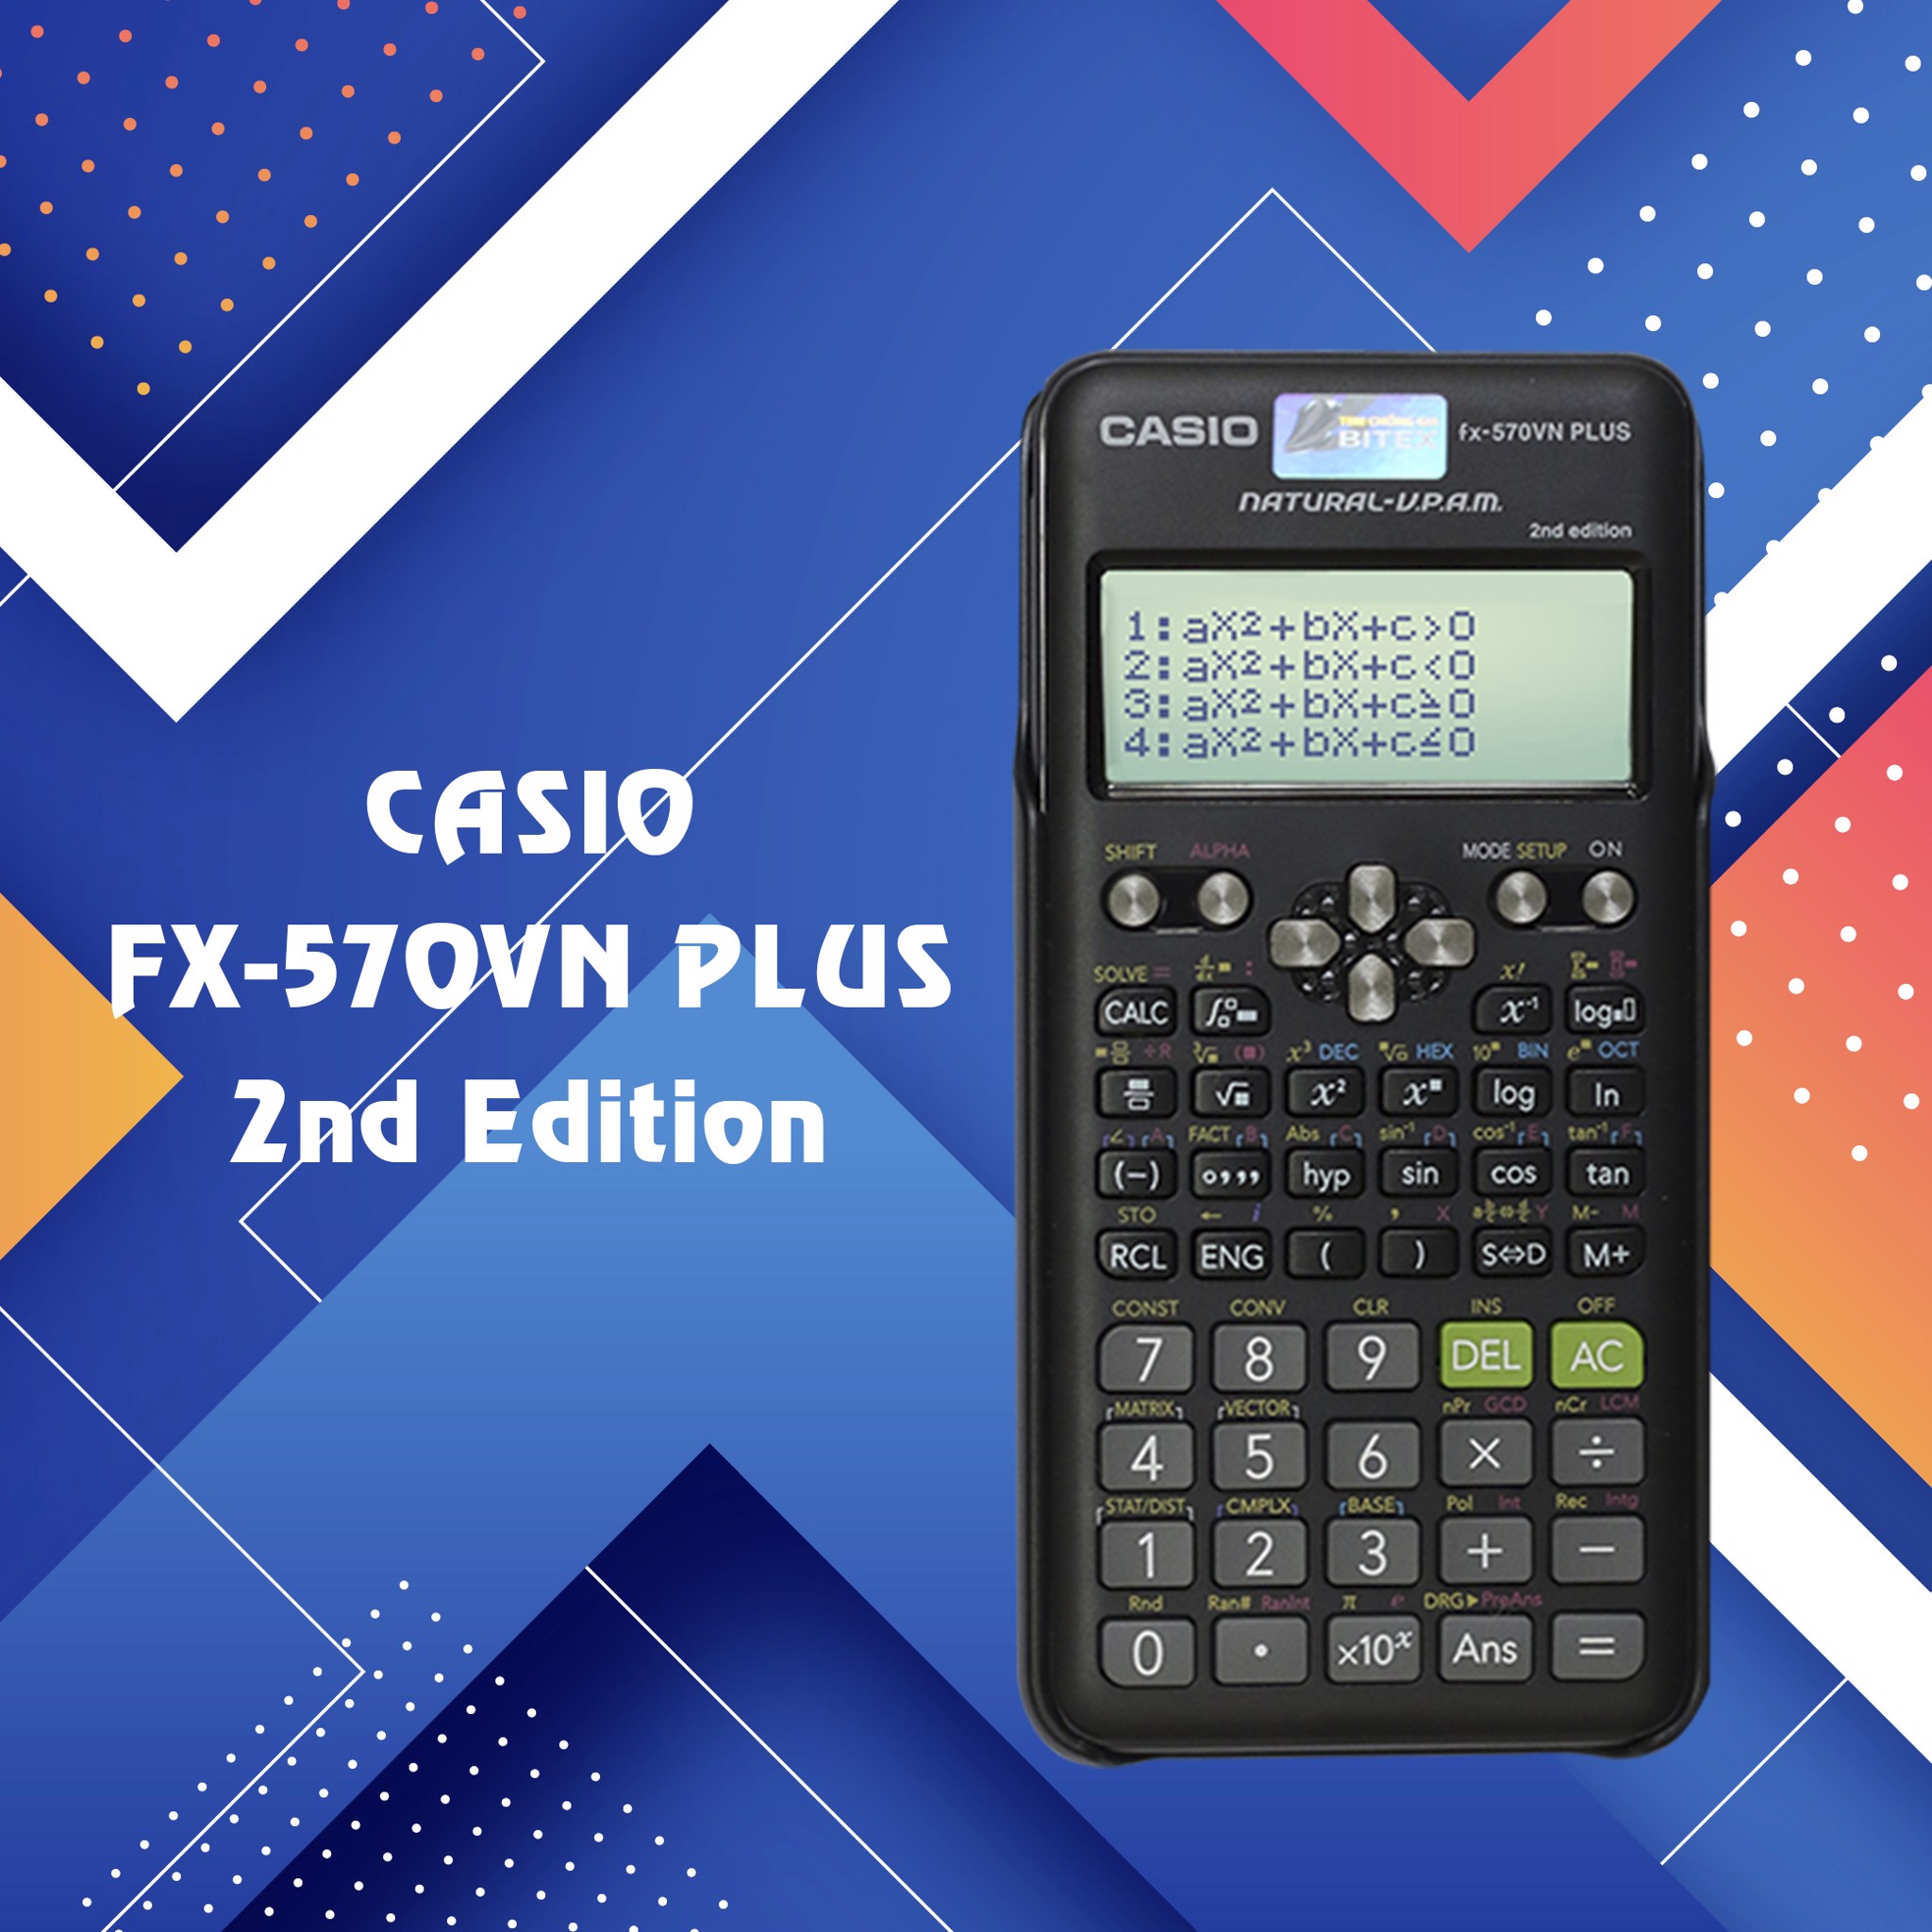 Giới thiệu máy tính Casio Fx-570VN Plus phiên bản mới (2nd Edition)